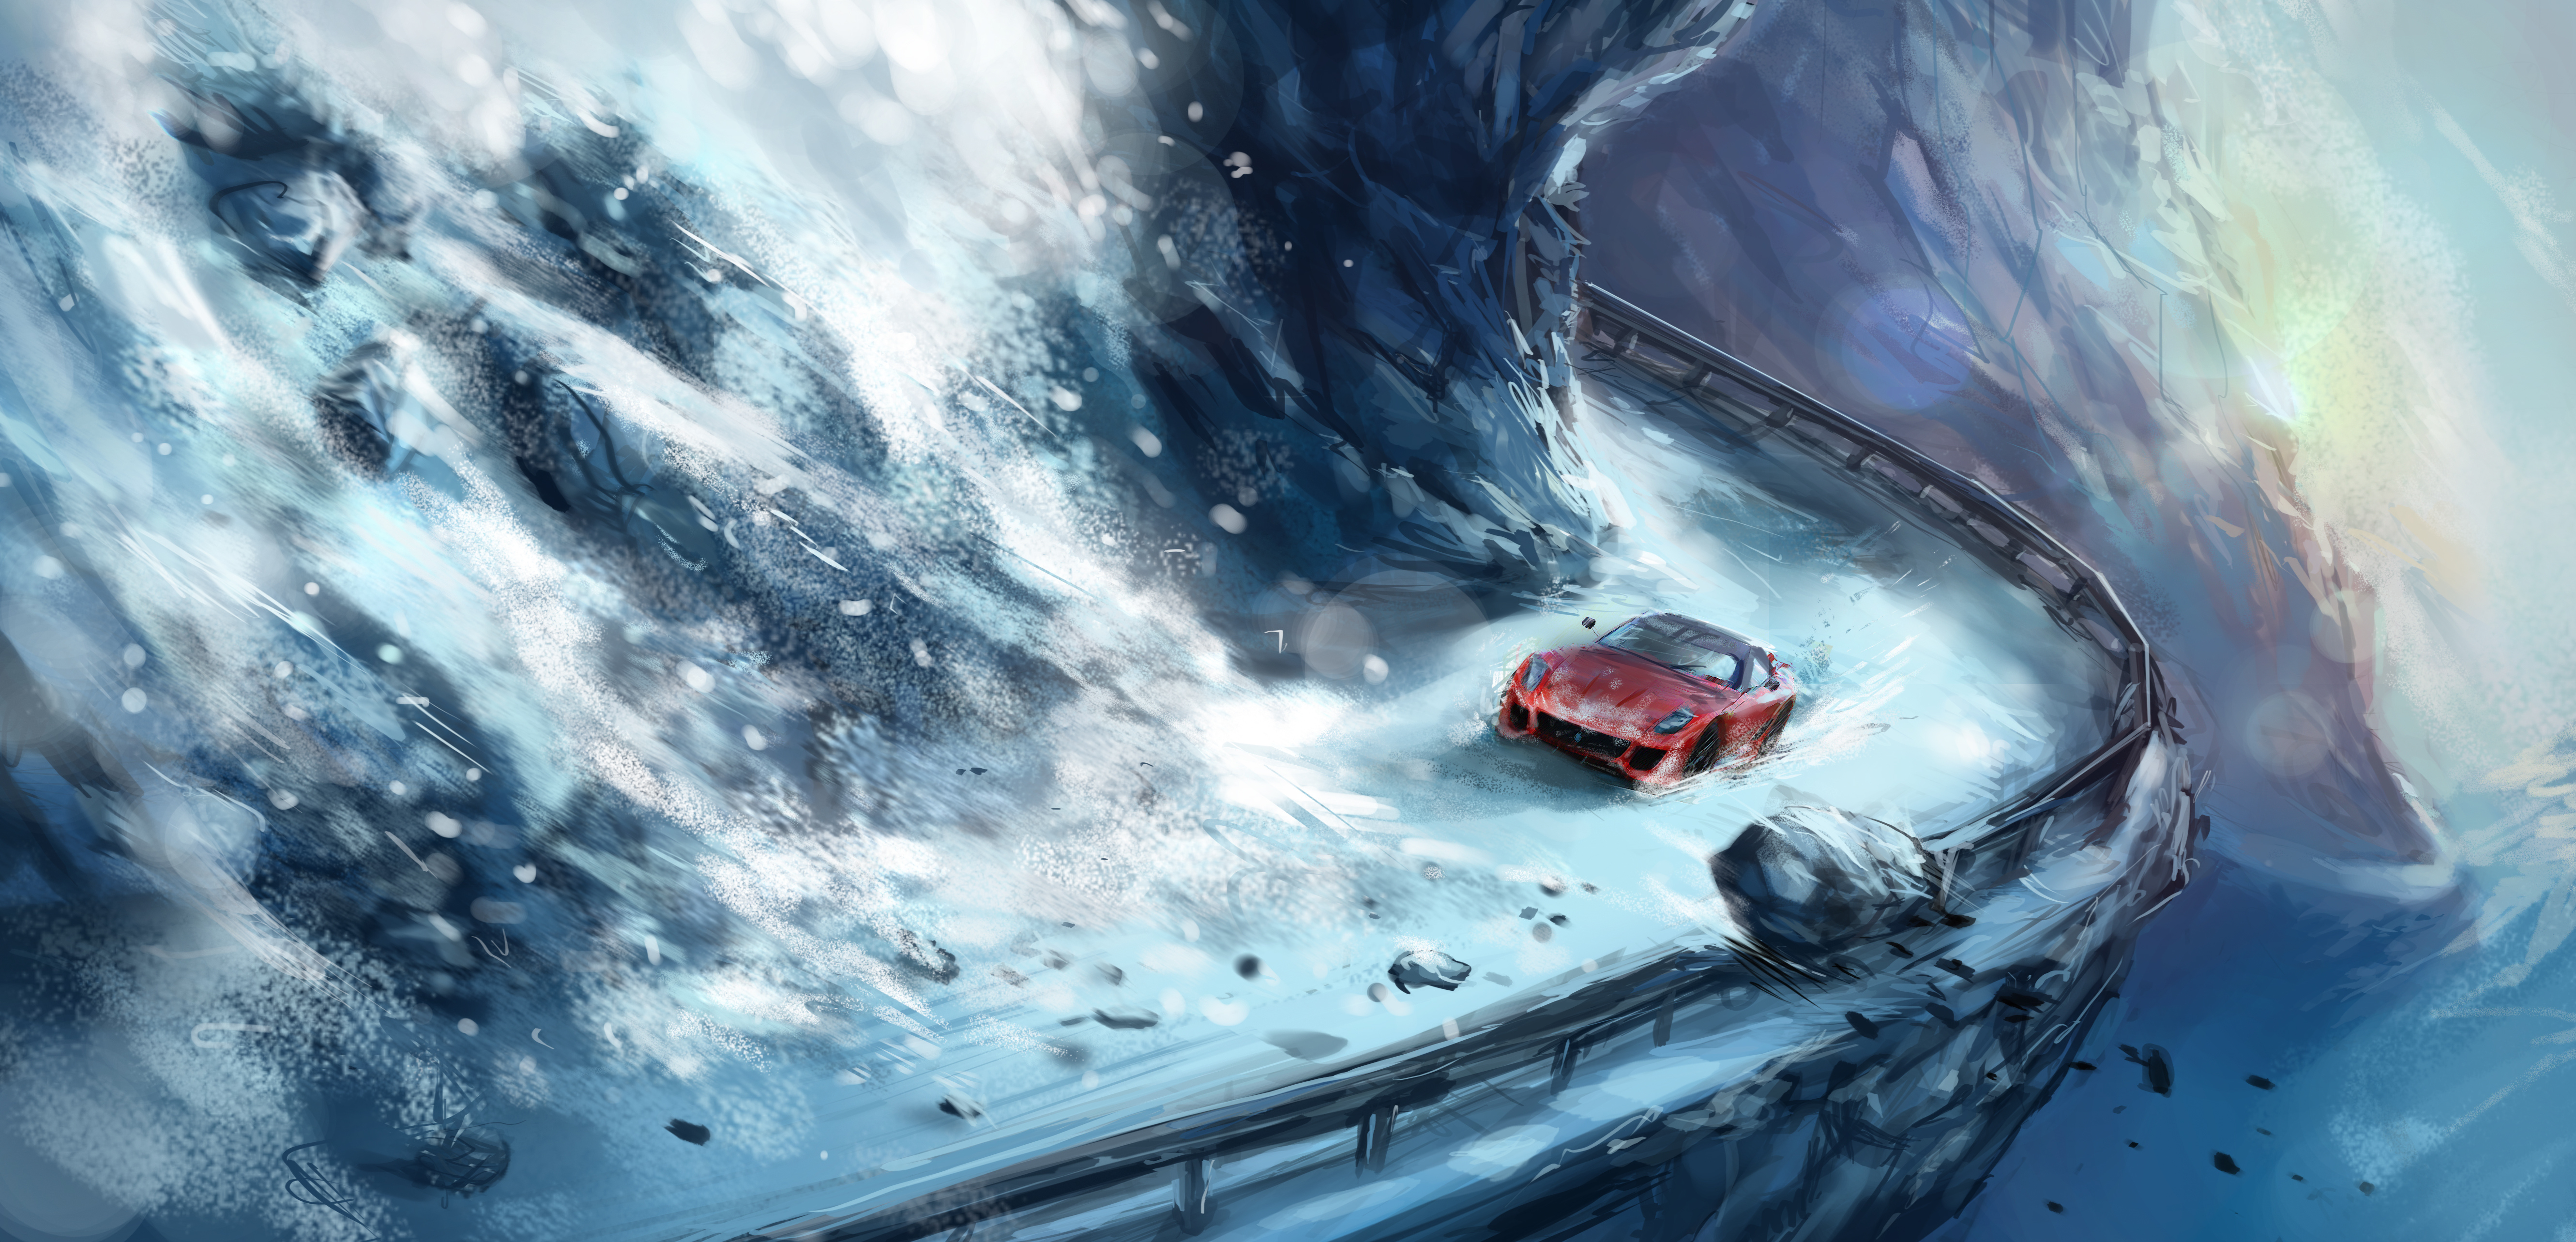 Машина едет по реке. Машина арт. Машина в снегу арт. Красивые арты машин. Арт машина на дороге в горах.